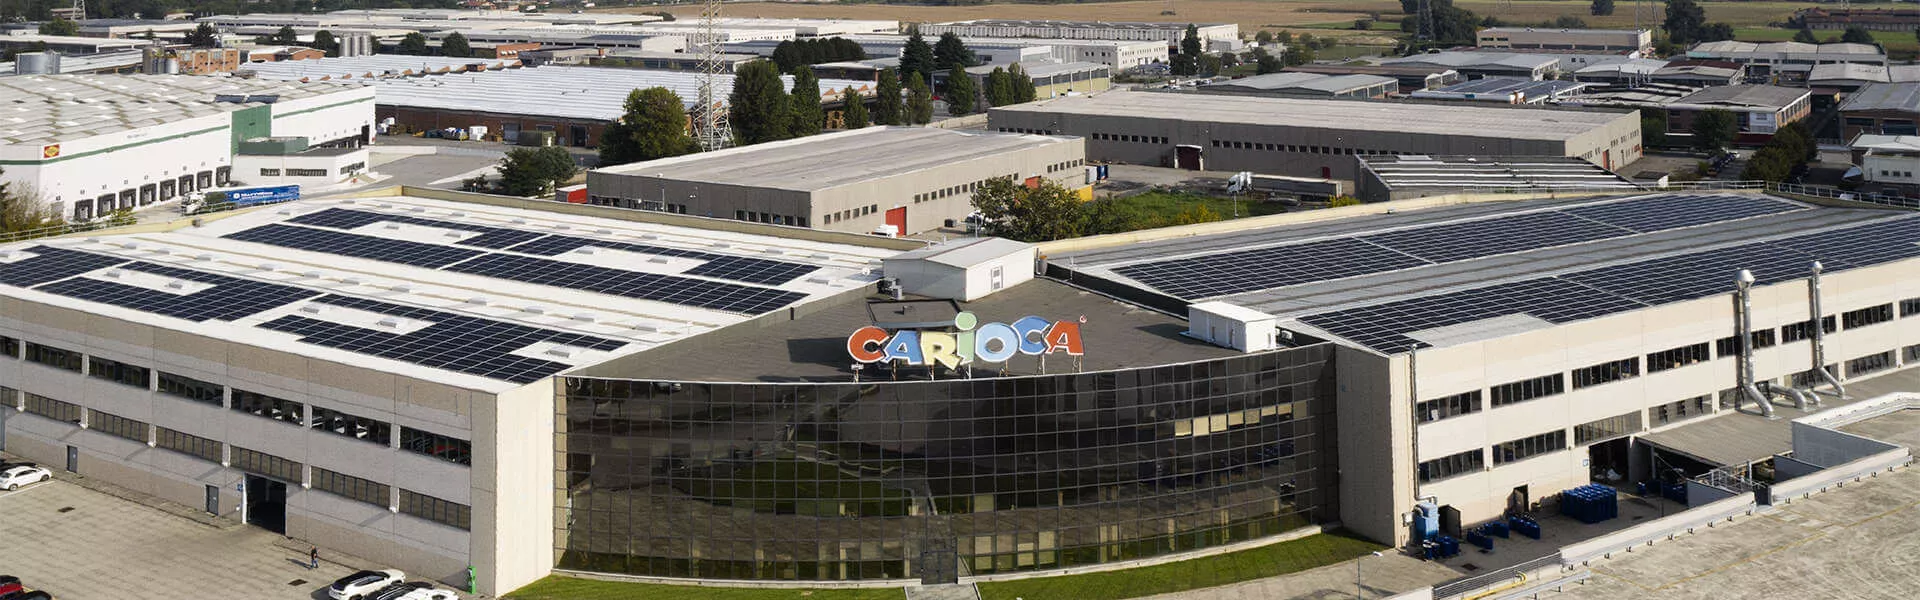 Carioca sceglie  la sostenibilità dell’energia solare con i pannelli fotovoltaici SunPower Performance 